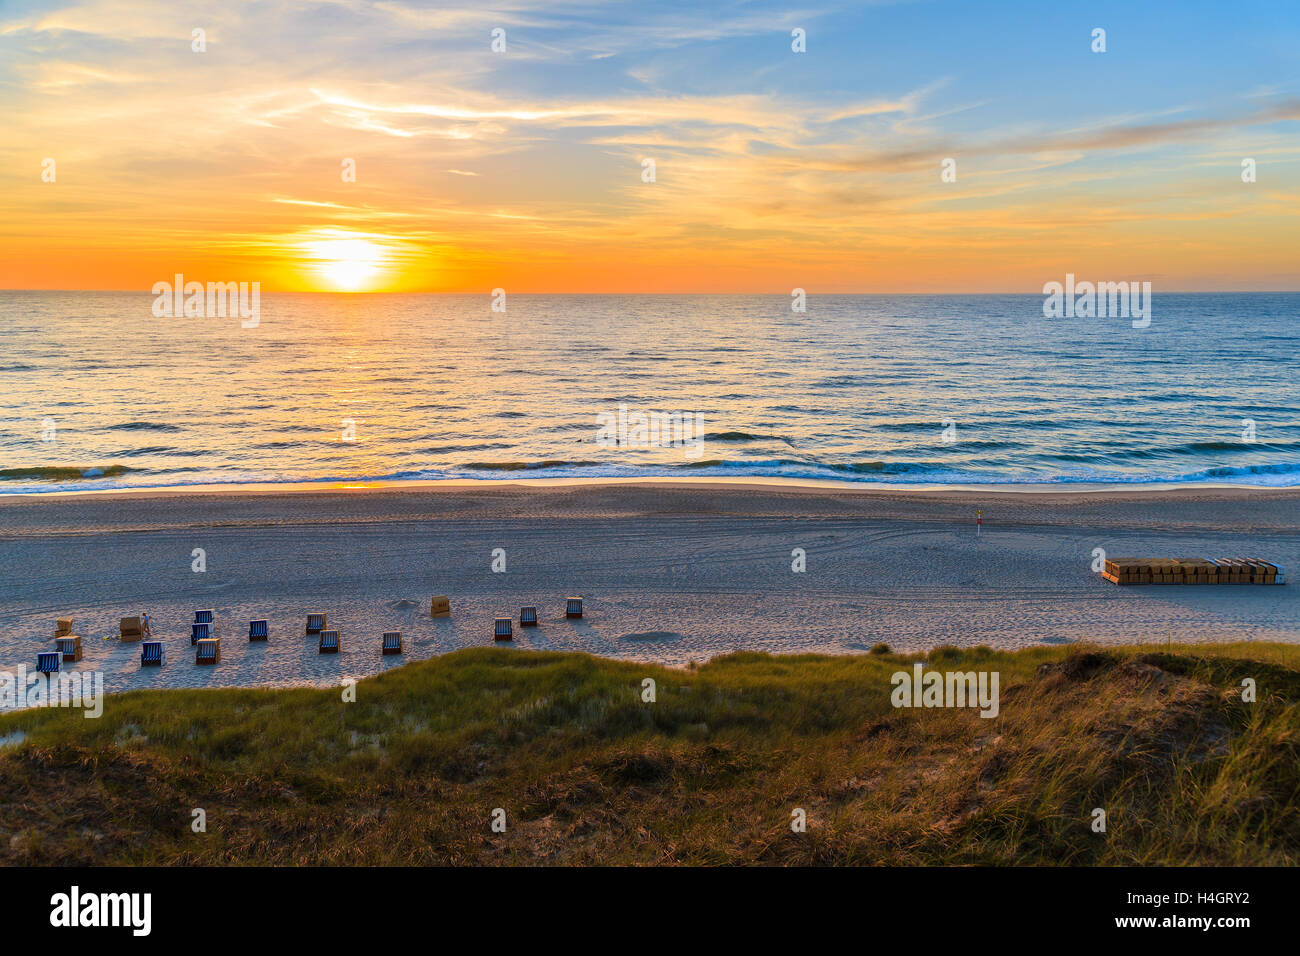 Sonnenuntergang über Meer am Strand in Wennigstedt, Insel Sylt, Deutschland Stockfoto